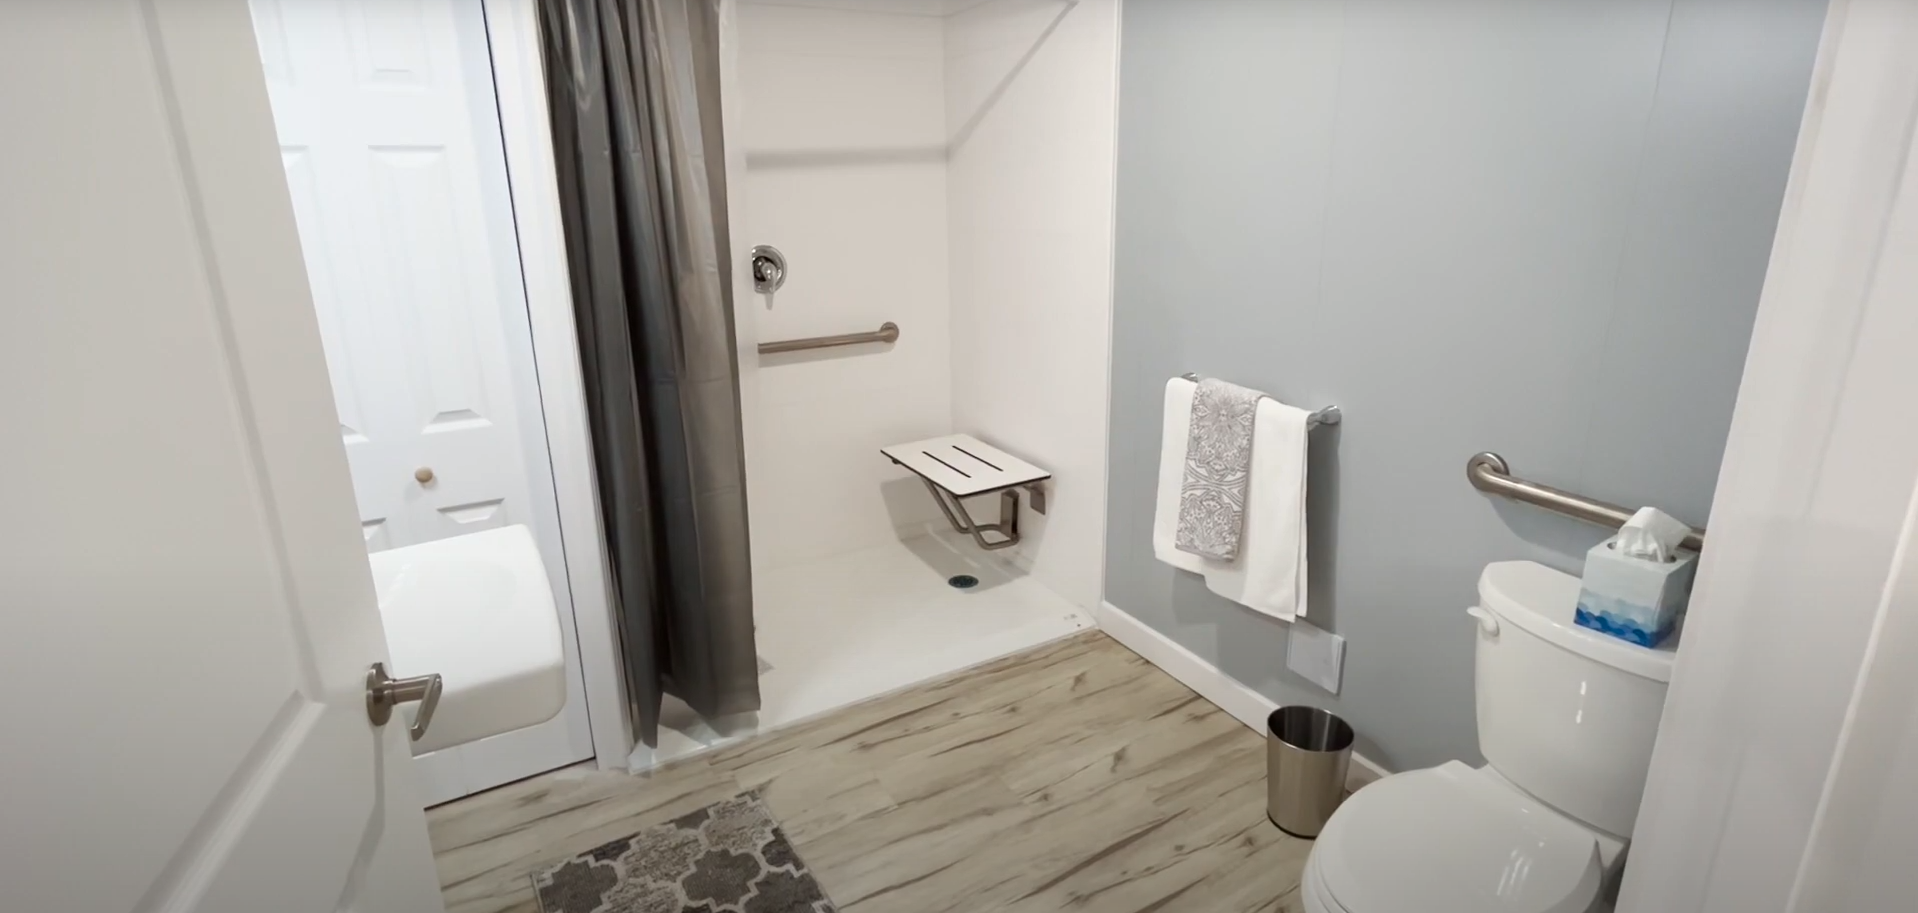 Bechtel - Bathroom - NOW Housing